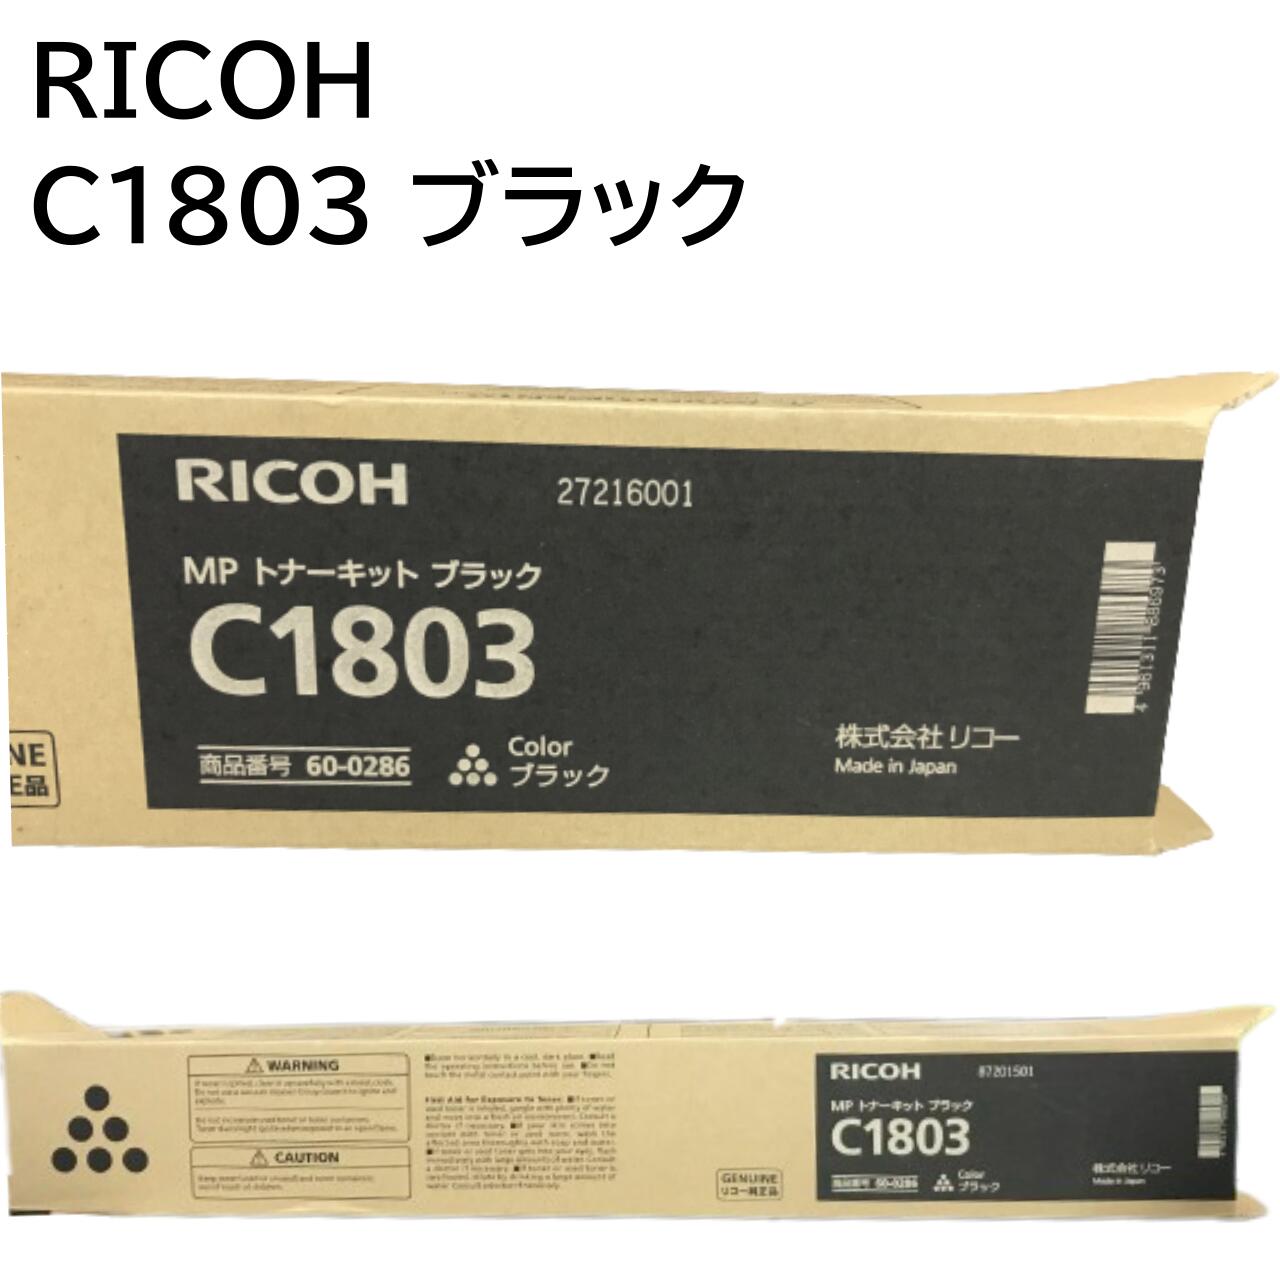 新品 RICOH C1803 ブラック 600286 RI-TNMPC1803BKJ MP C1803 C1803SPF リコー MP トナー キット カートリッジ パソコン 周辺機器 PCサ..